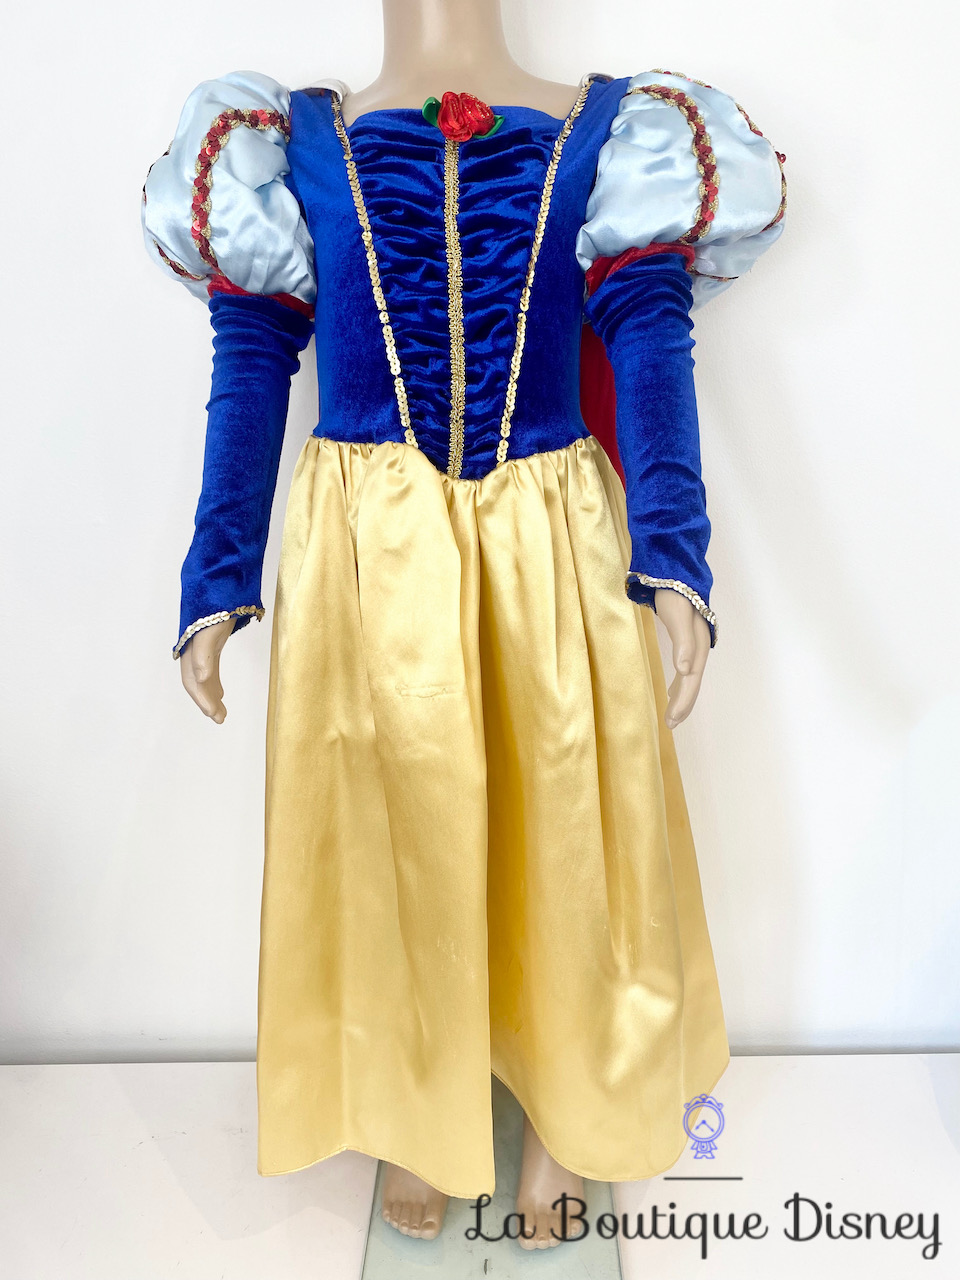 Déguisement Blanche Neige Disney Store Exclusive taille 7-8 ans robe princesse bleu jaune cape rouge